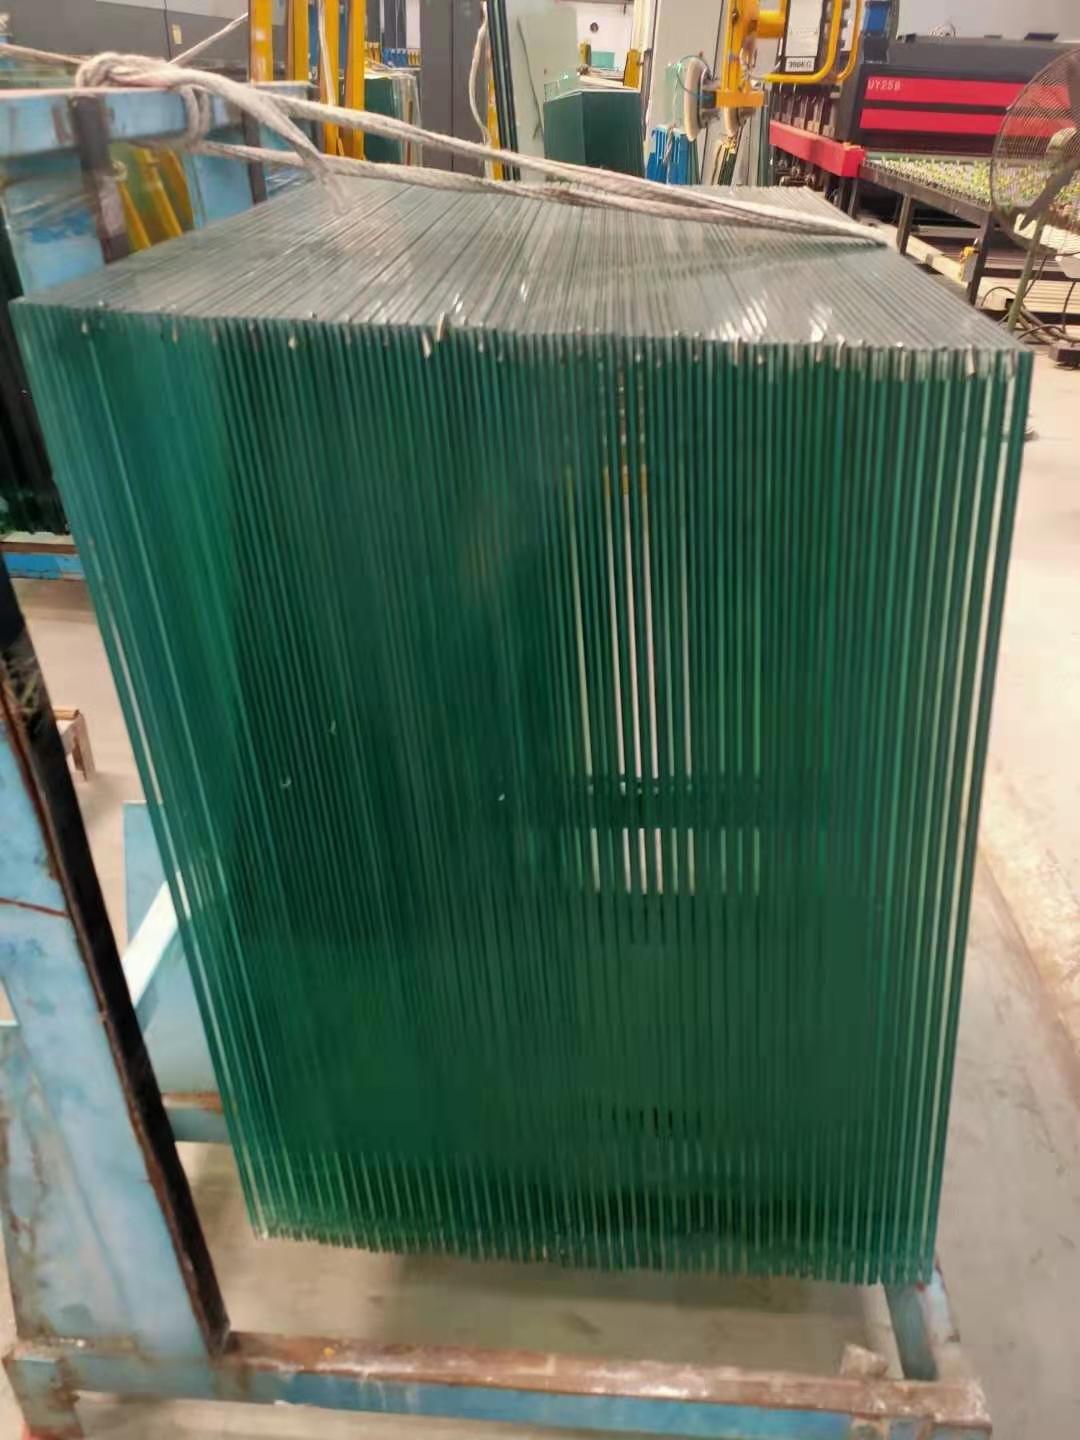 钢化玻璃 提供安装 LOW-E玻璃 蓝玻各种 镀膜玻璃 防火防弹玻璃 夹胶玻璃 中空玻璃 本厂生产信义3